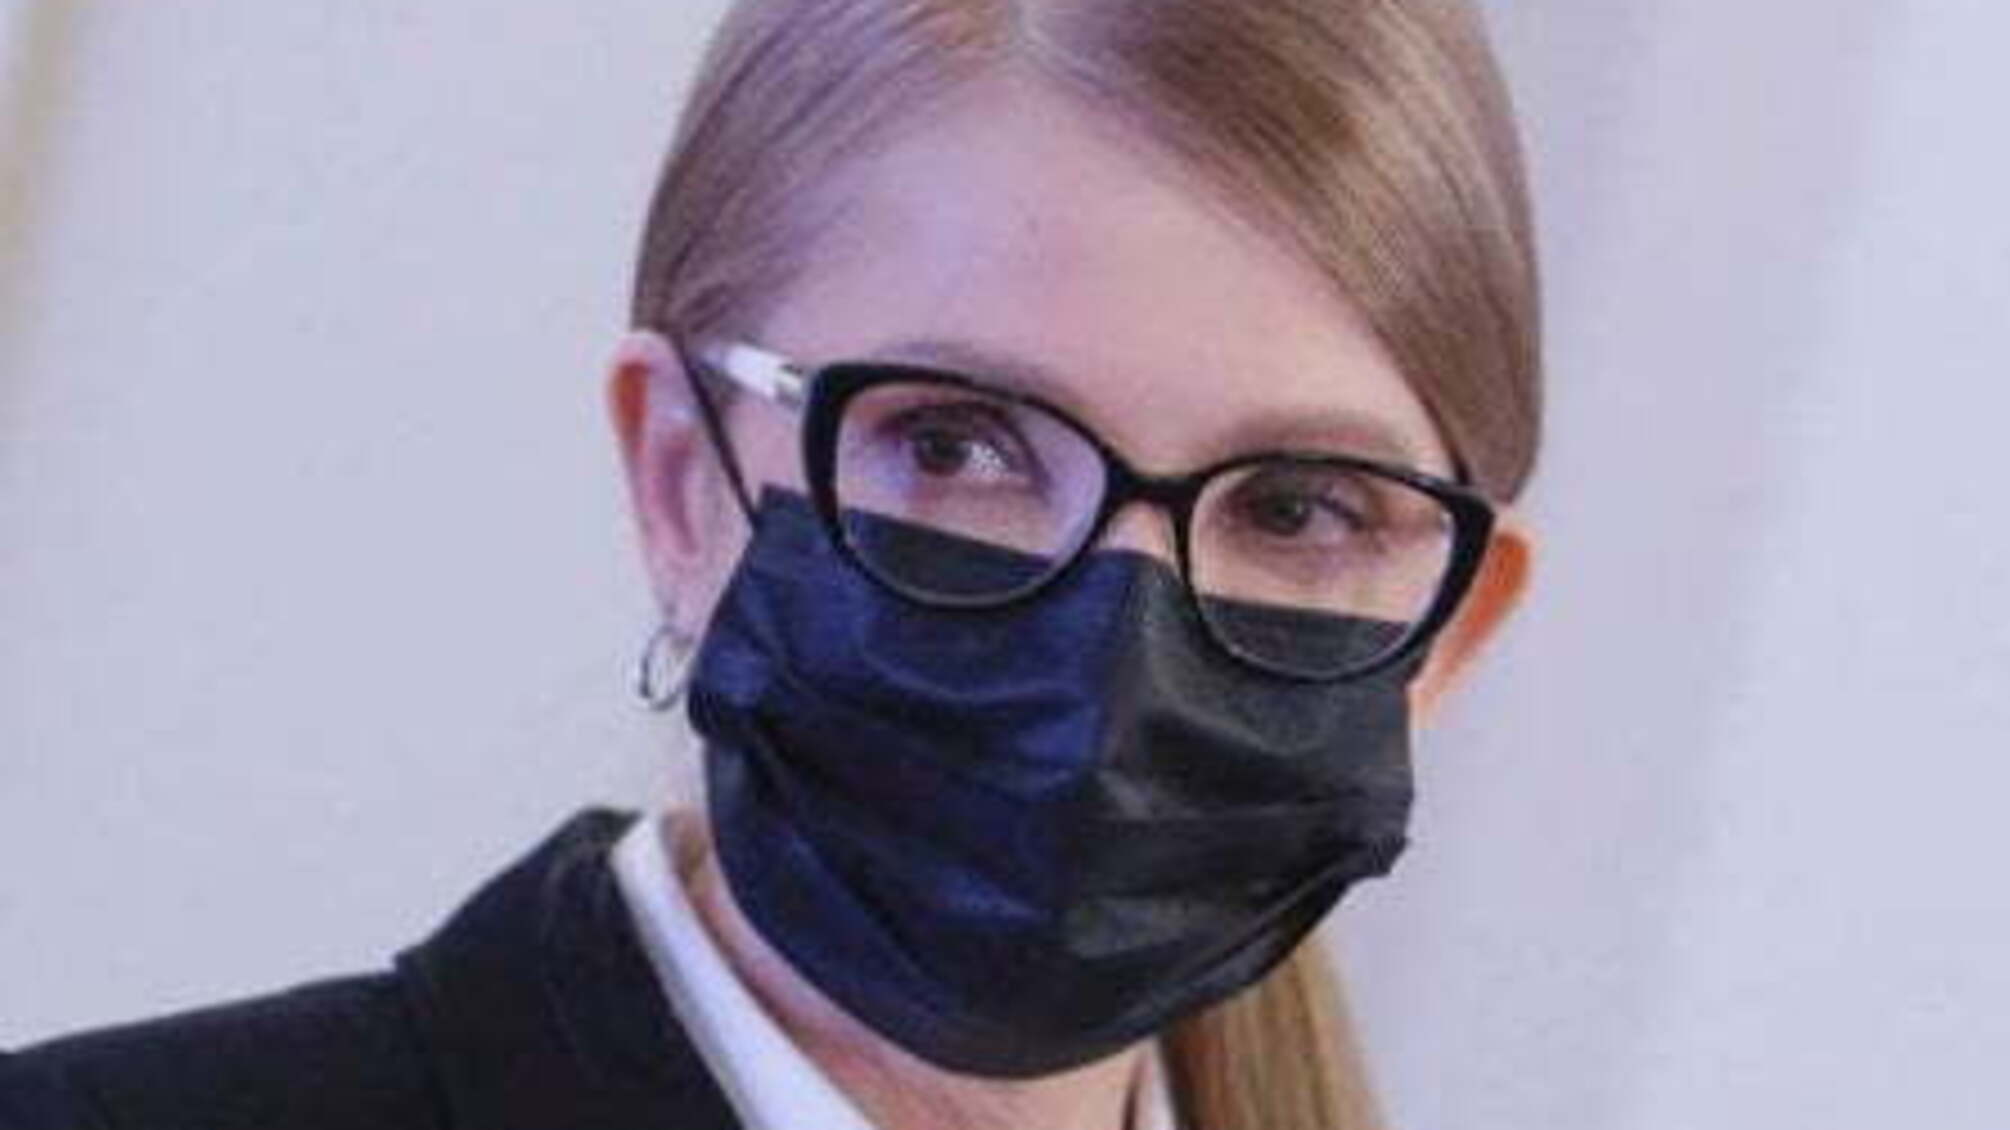 Карантин по-багатому: Тимошенко перечікувала пандемію у п'ятизірковому готелі на Львівщині - розслідування